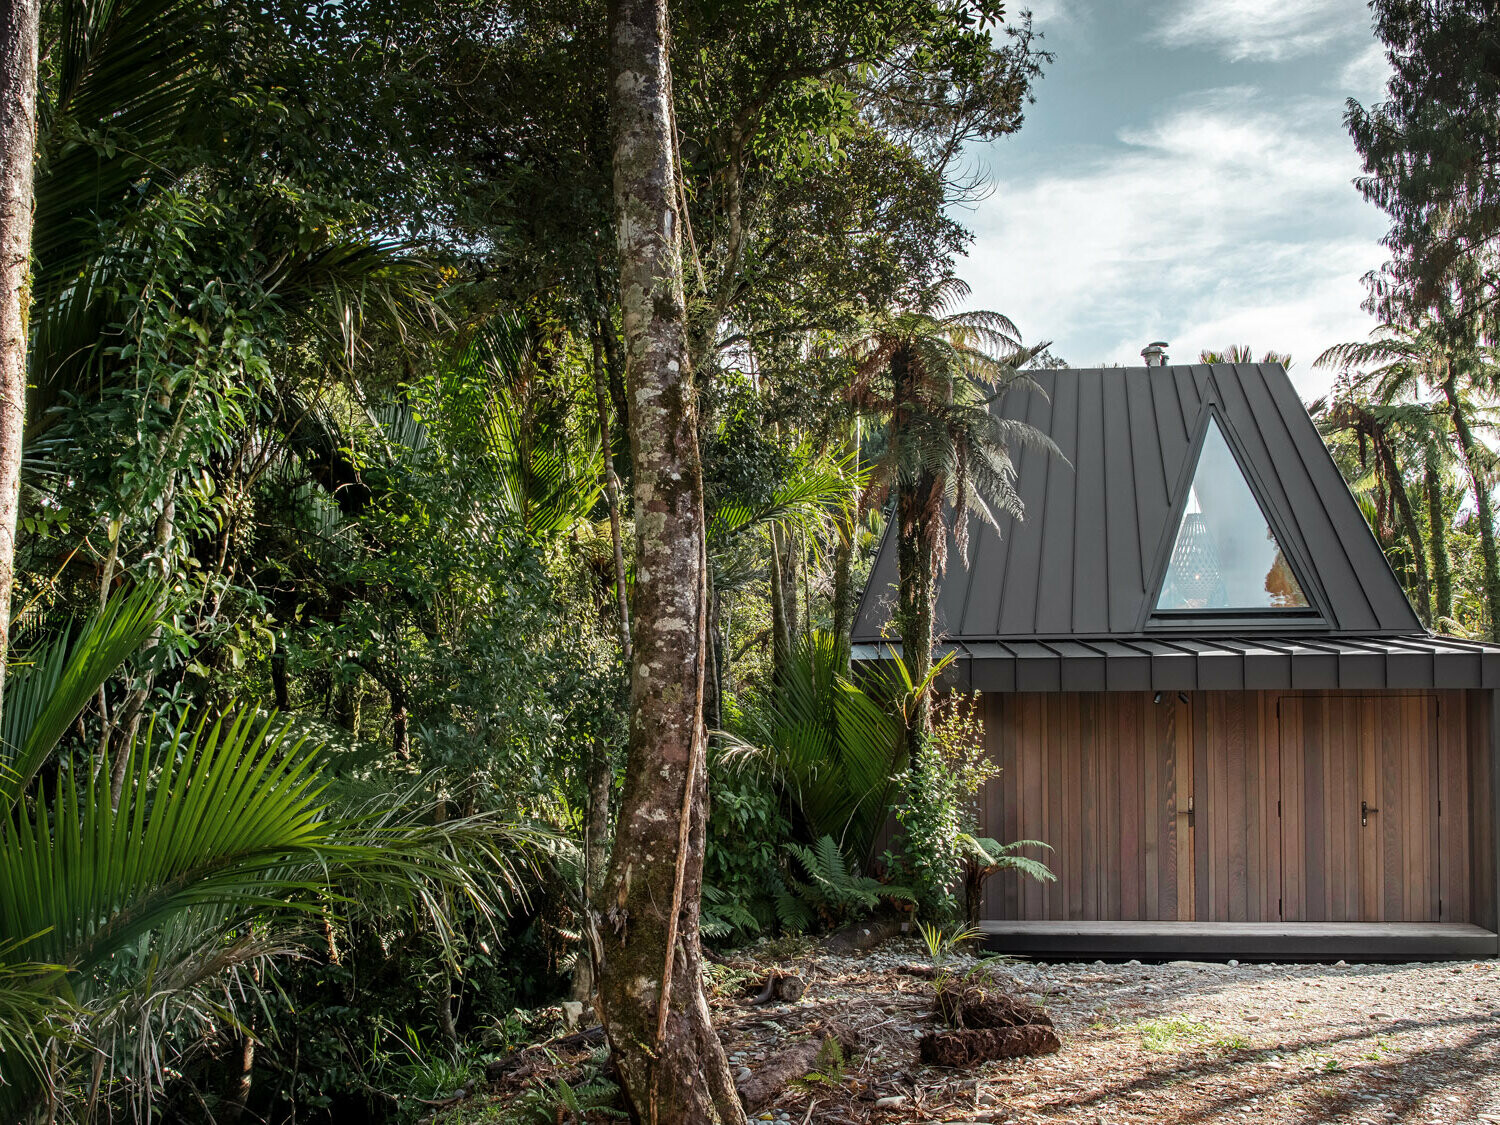 Boční pohled na bivak realizovaný firmou Fabric s neobvyklou černo-šedou střechou PREFALZ, která je ukryta mezi palmami Nikau v džungli Punakaiki.